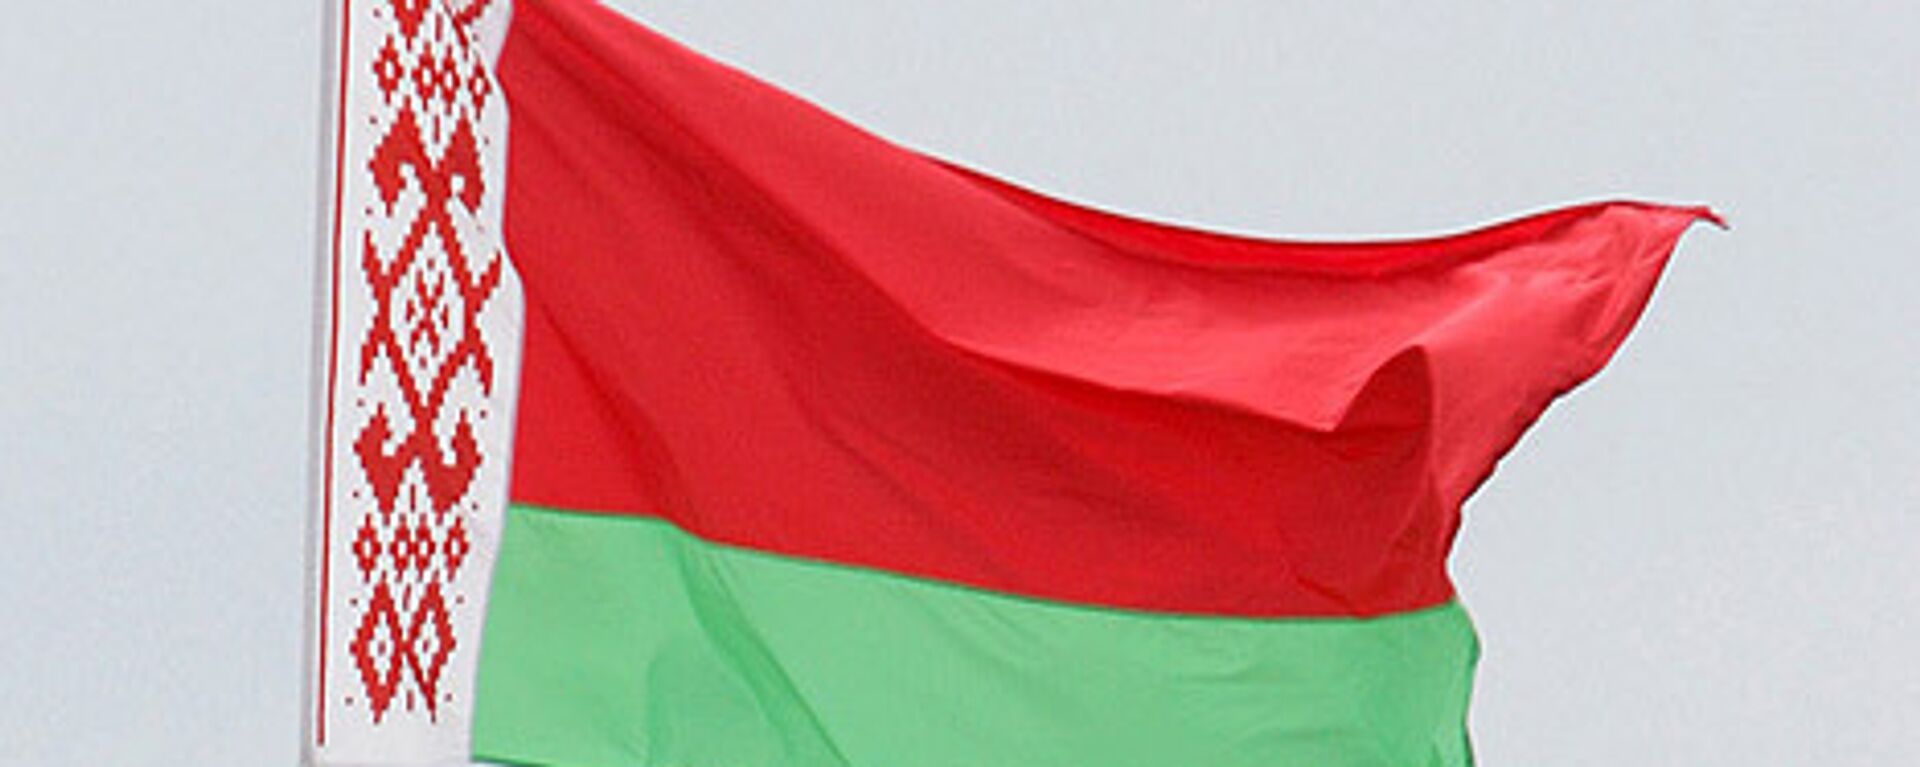 Belarus bayrağı - Sputnik Türkiye, 1920, 19.05.2021